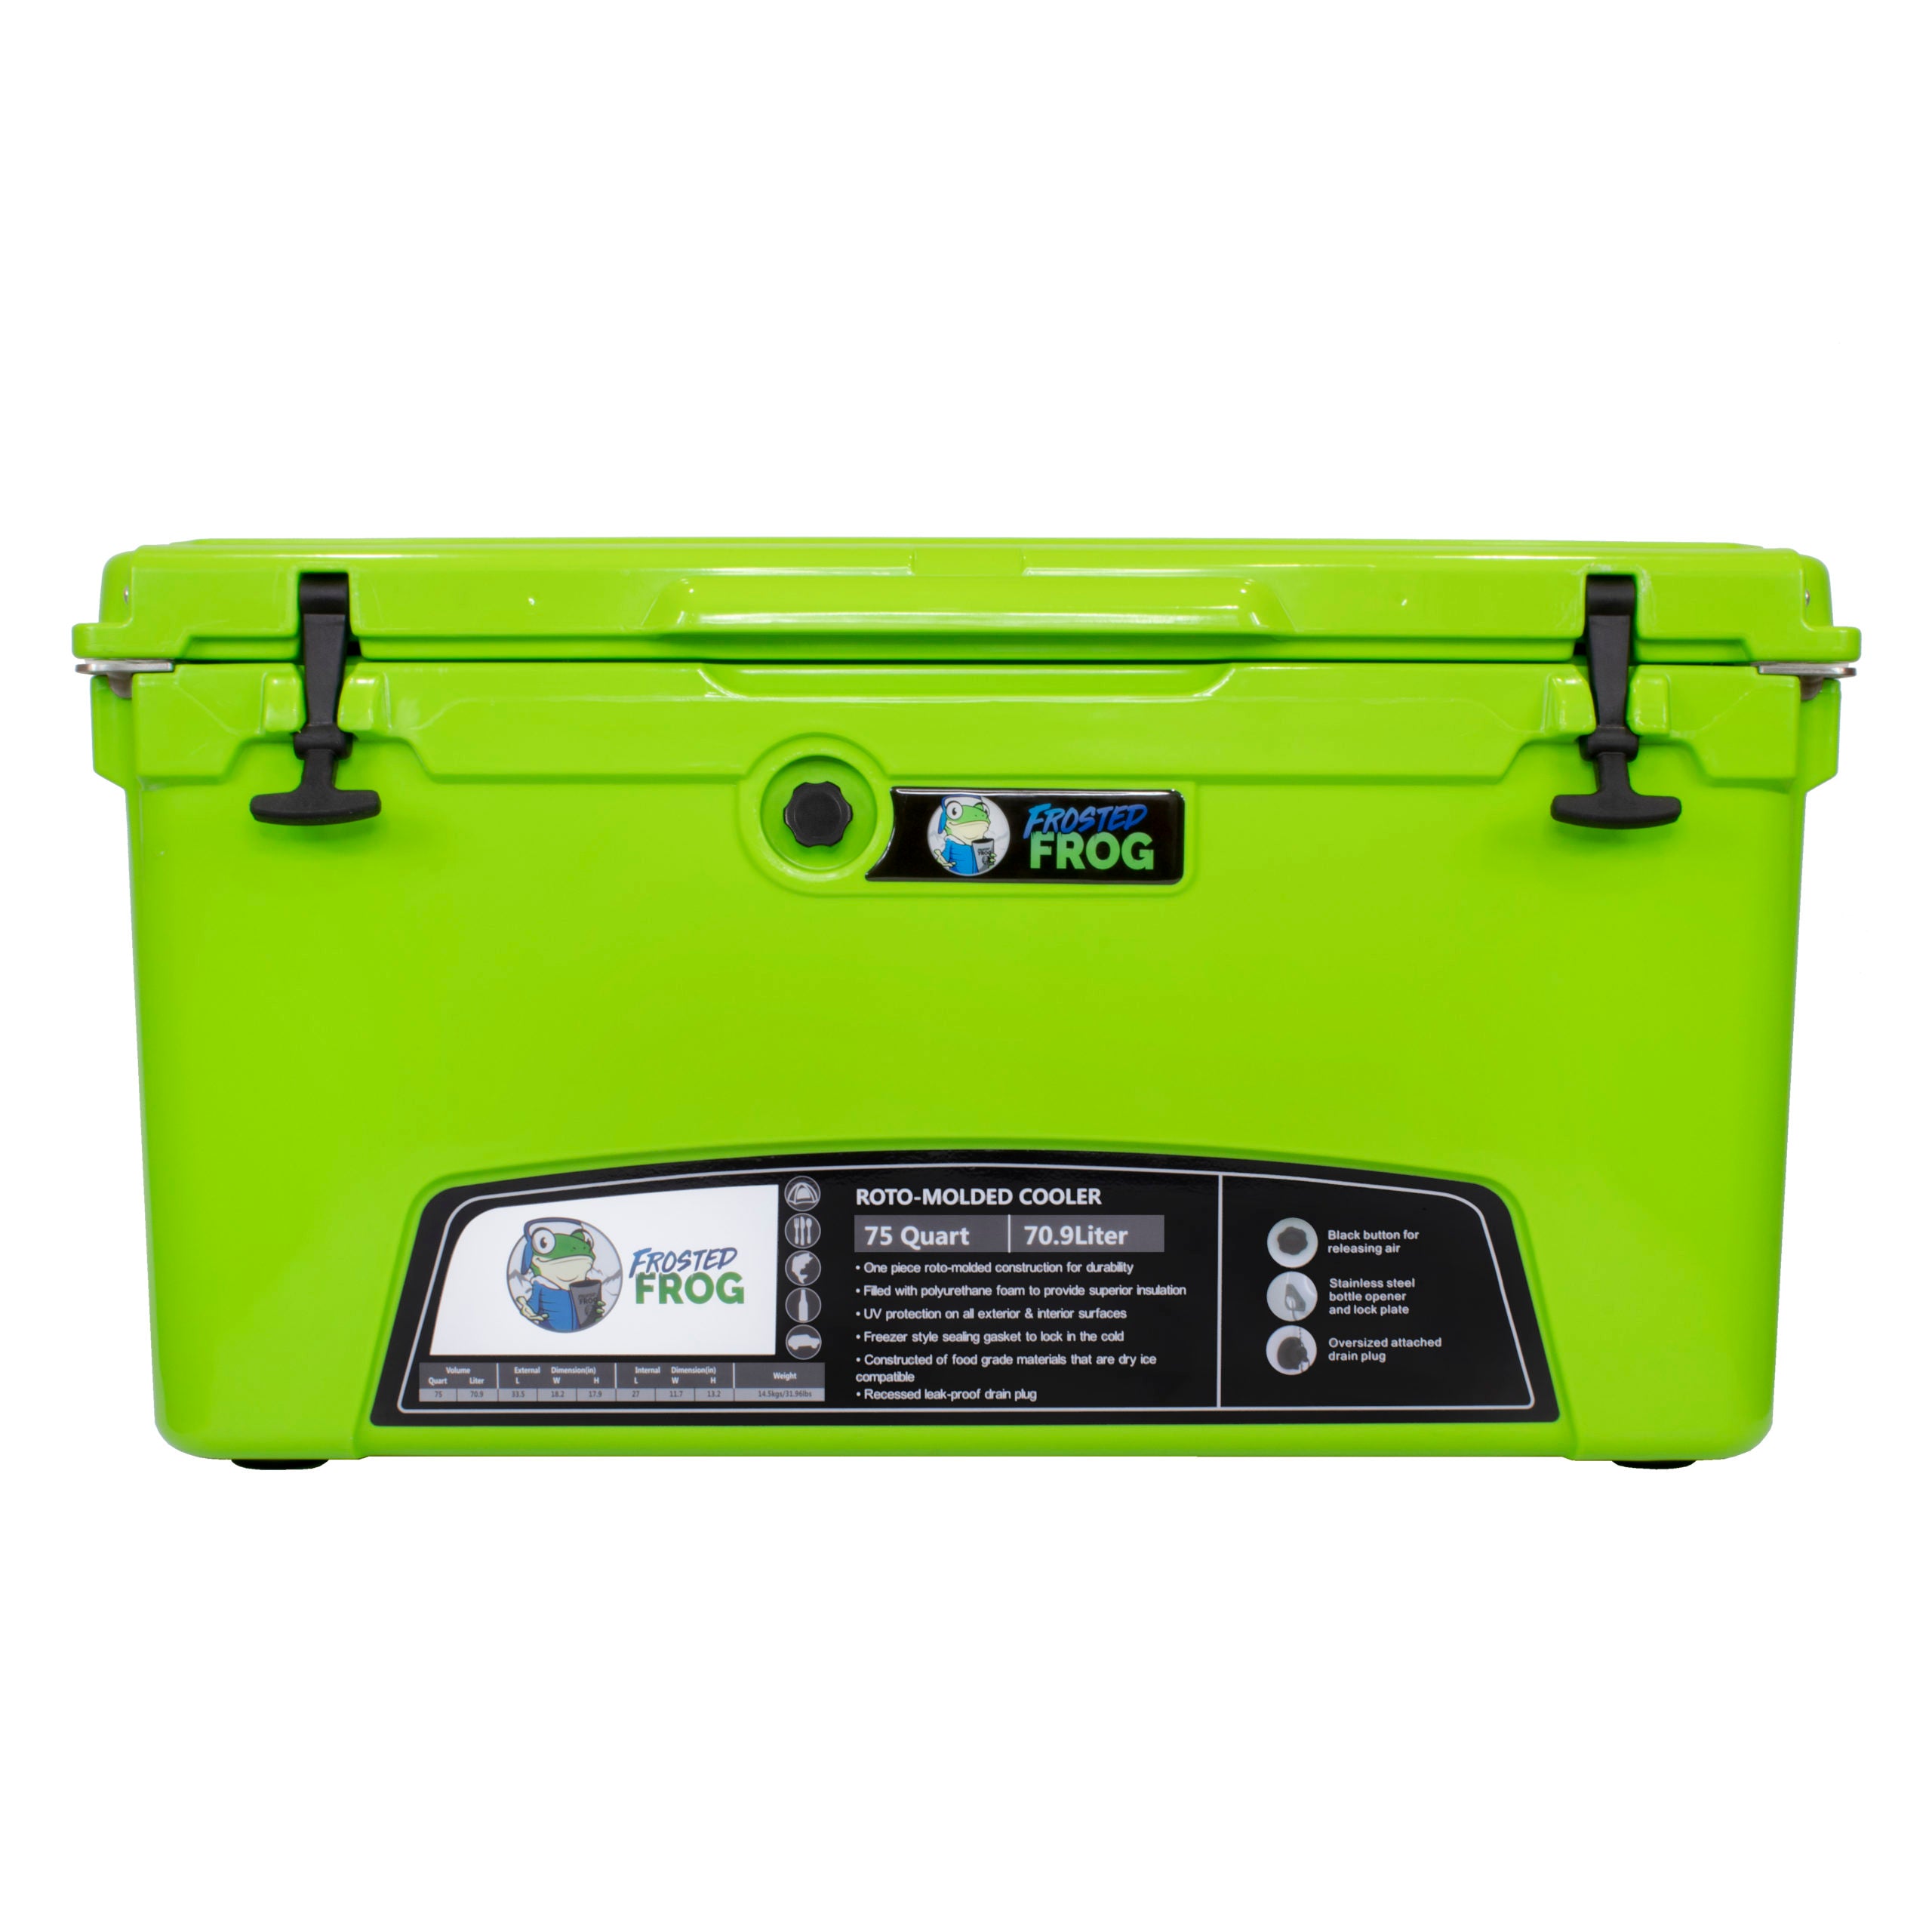 Frosted Frog 75 QT Rotomolded Cooler – Original Green, 75QT – Pro UTV Parts